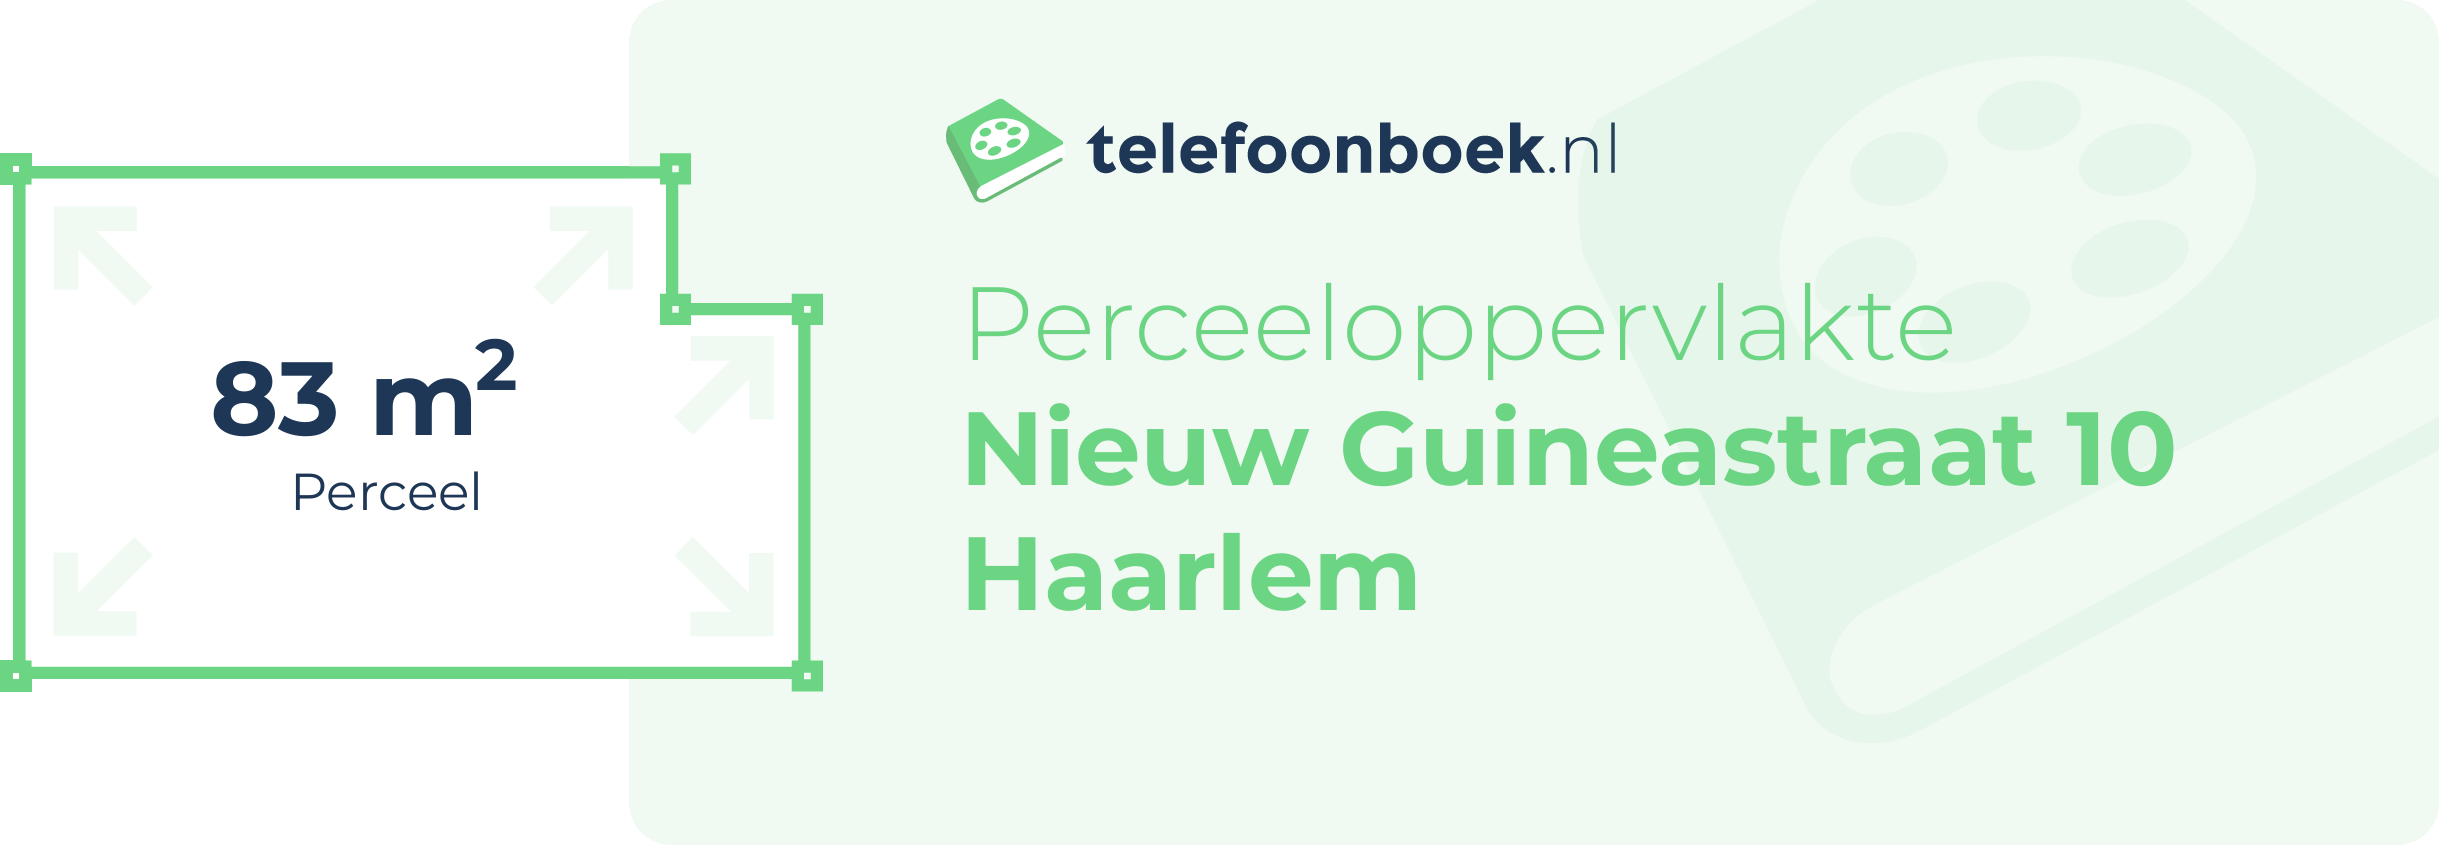 Perceeloppervlakte Nieuw Guineastraat 10 Haarlem